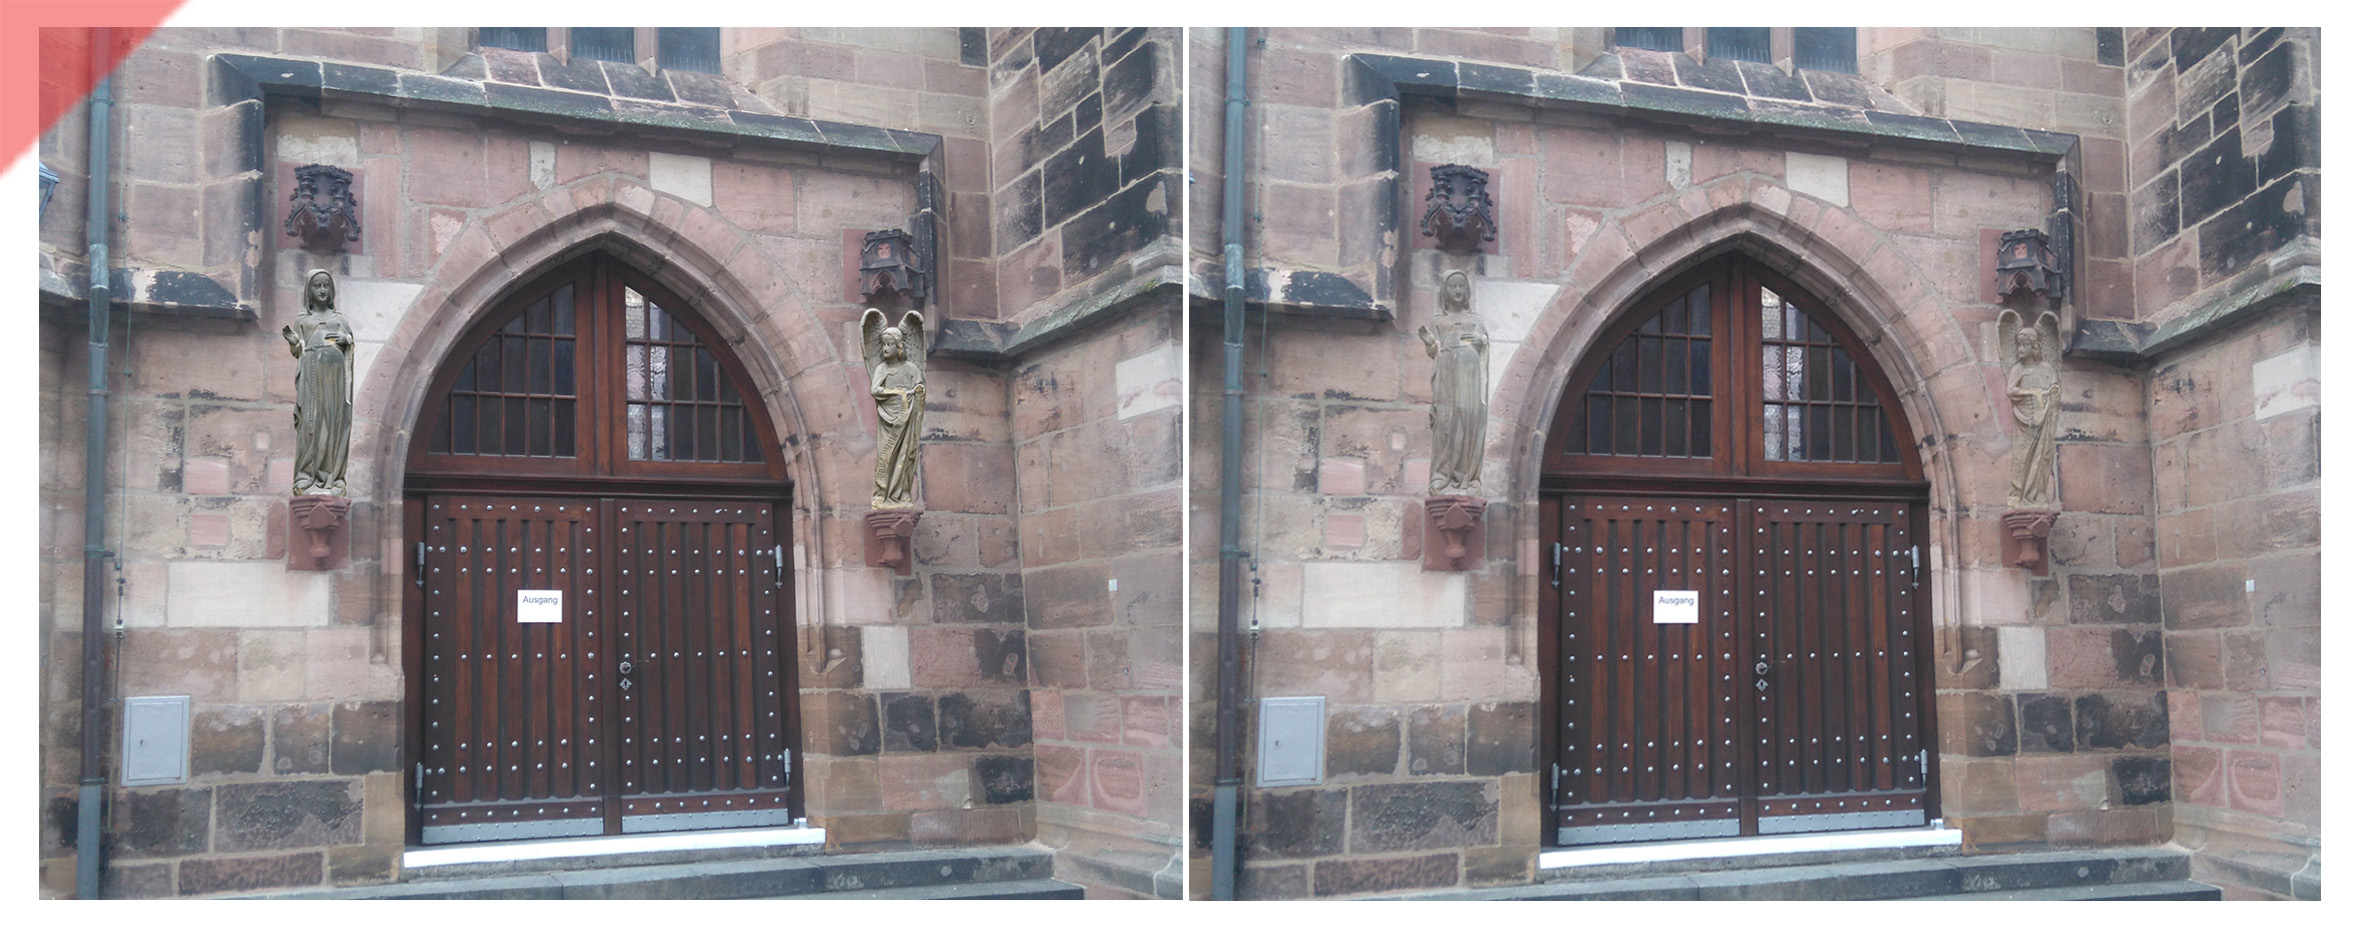 Frauenkirche-Liebfrauenkirche-Nürnberg-zwei-Skulpturen-Maria-Erzengel-Südportal